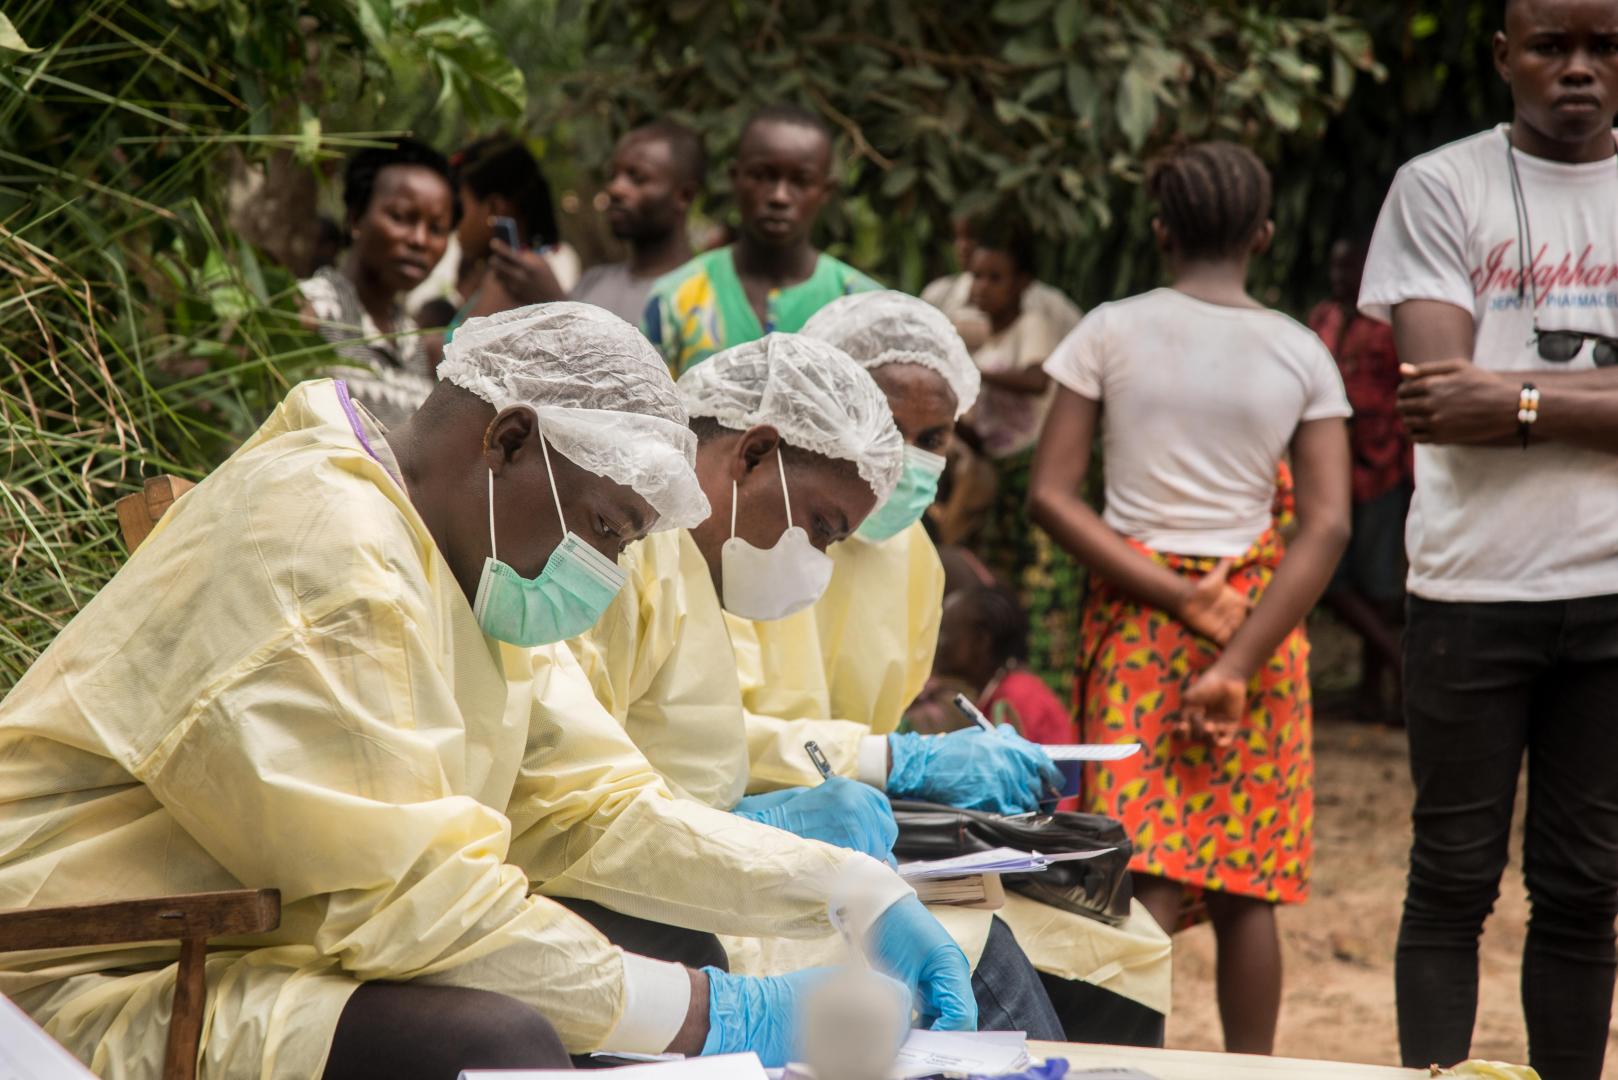 Los trabajadores médicos estaban preparando y desinfectando una casa en Moto, Bikoro, provincia de Equateur, República Democrática del Congo, después del descubrimiento de un caso confirmado de ébola.